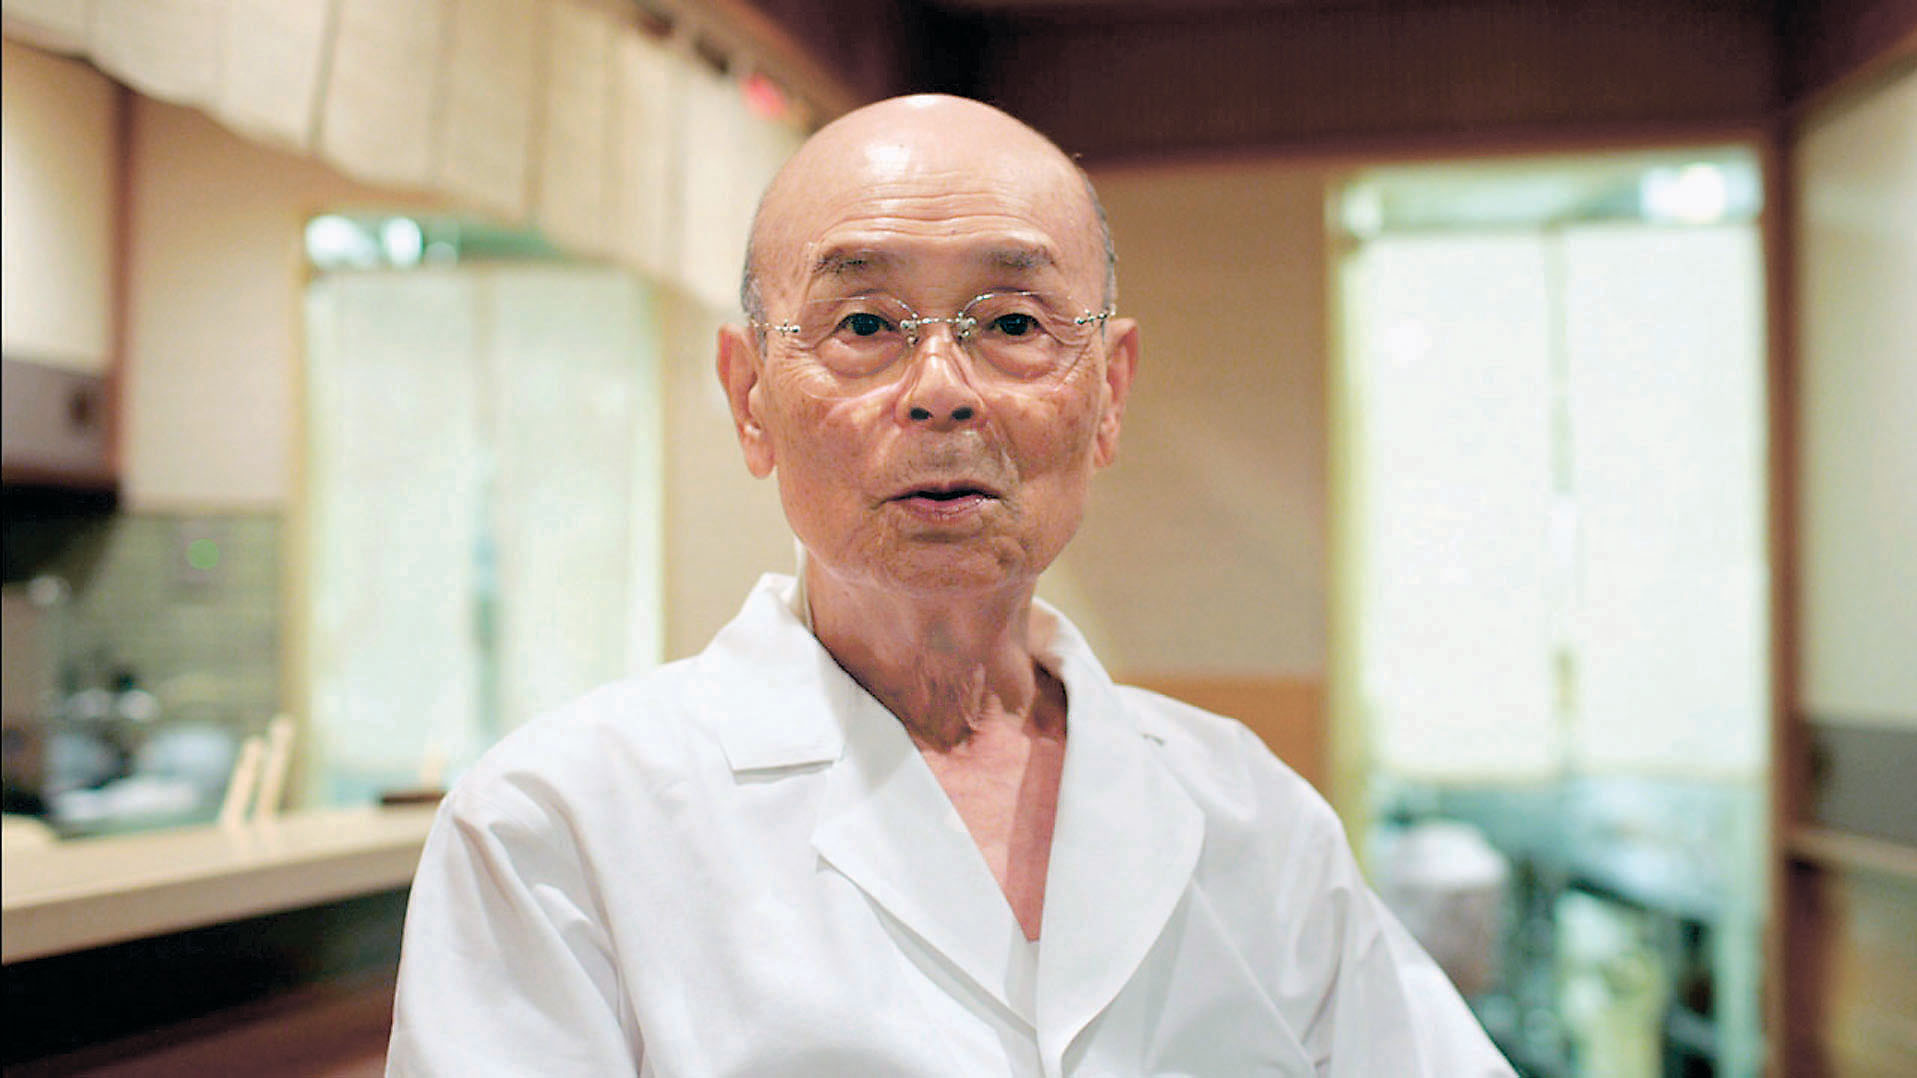 Triết lý sushi từ nghệ nhân Jiro Ono - ông chủ nhà hàng sushi ngon nhất thế giới